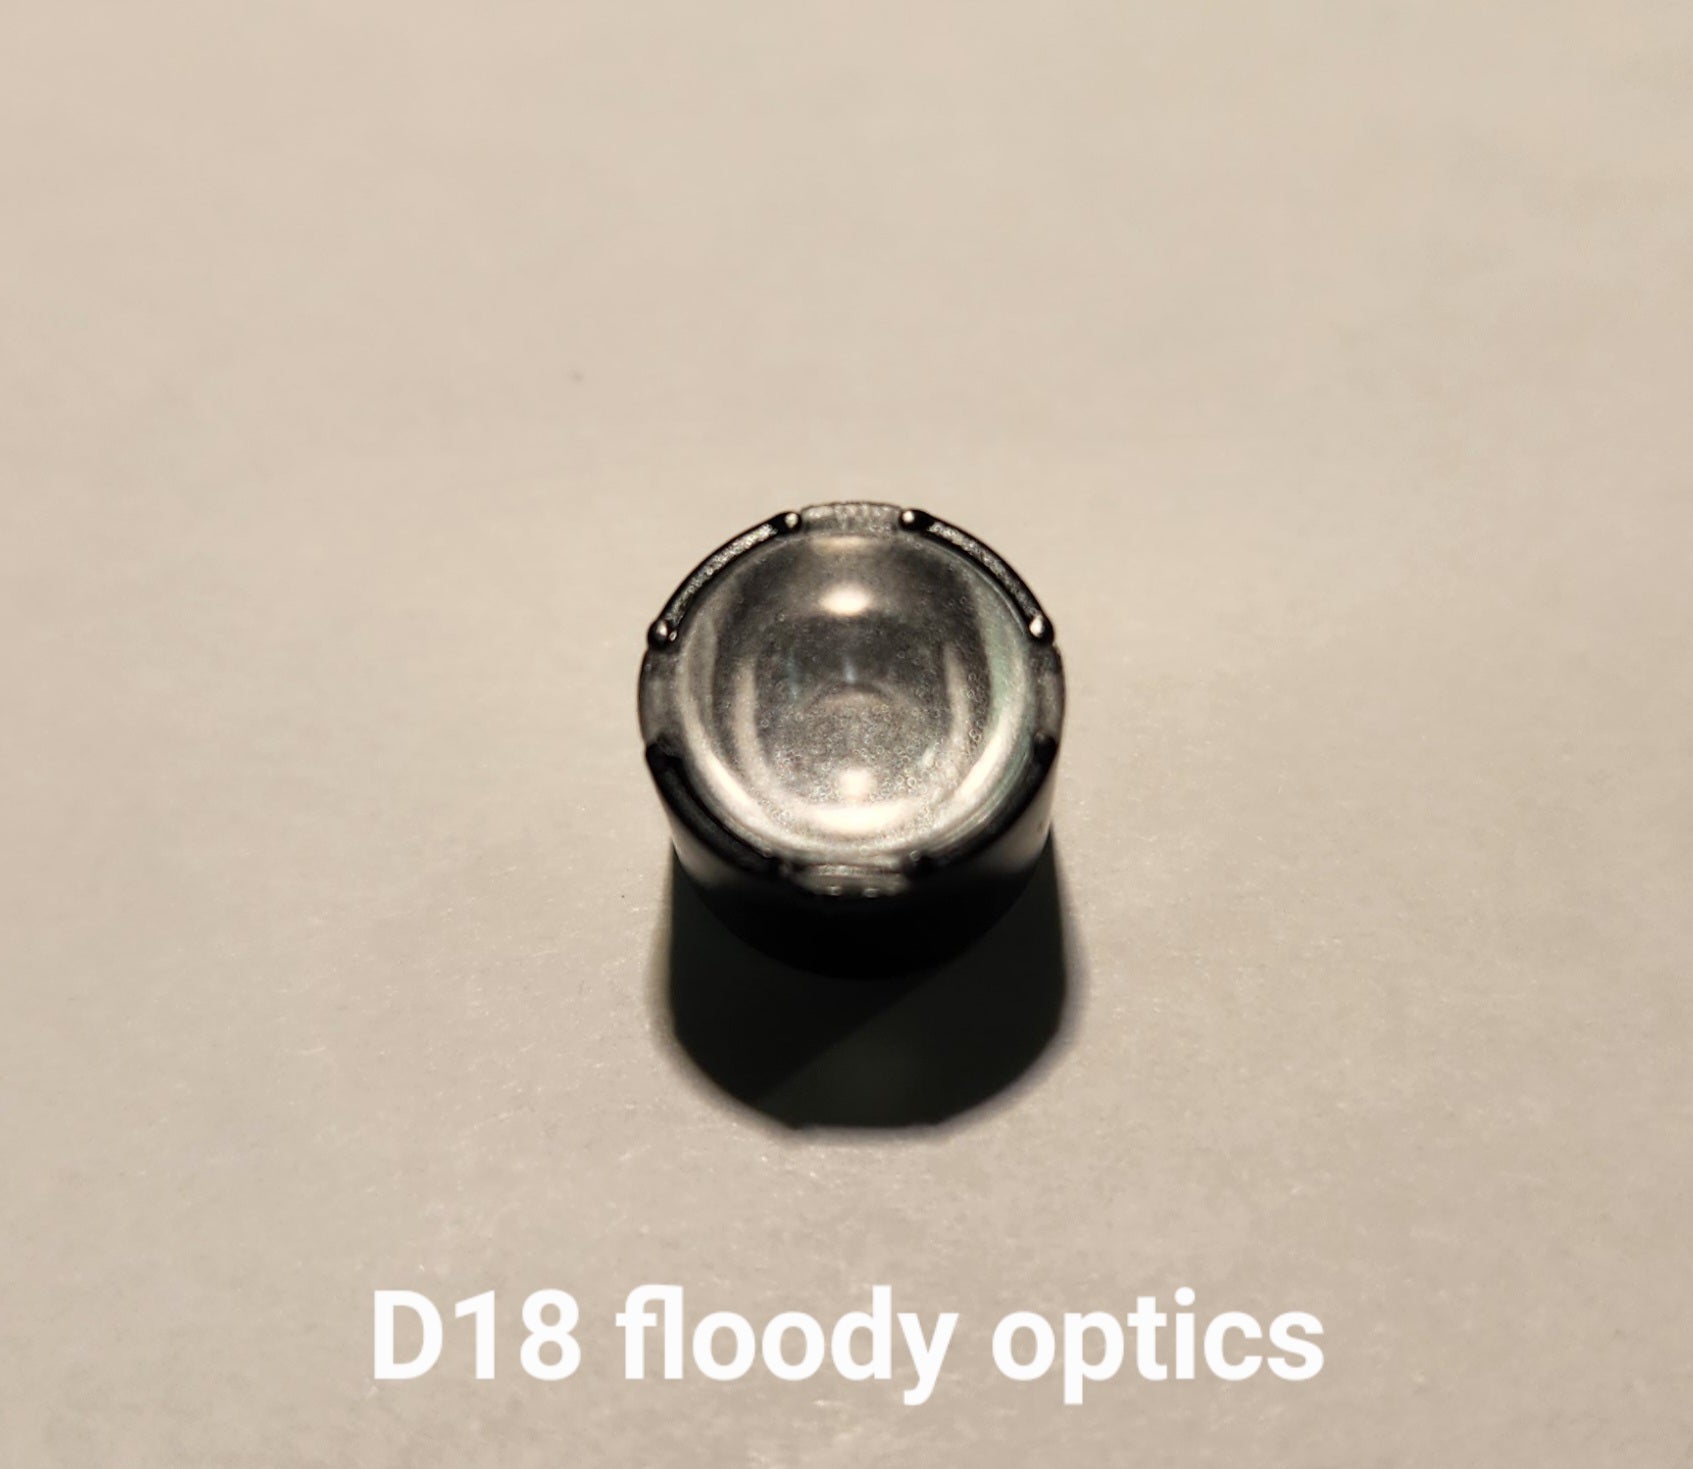 Emisar/Noctigon Replacement Glass TIR Optics LEDIL D18 FLOODY OPTICS